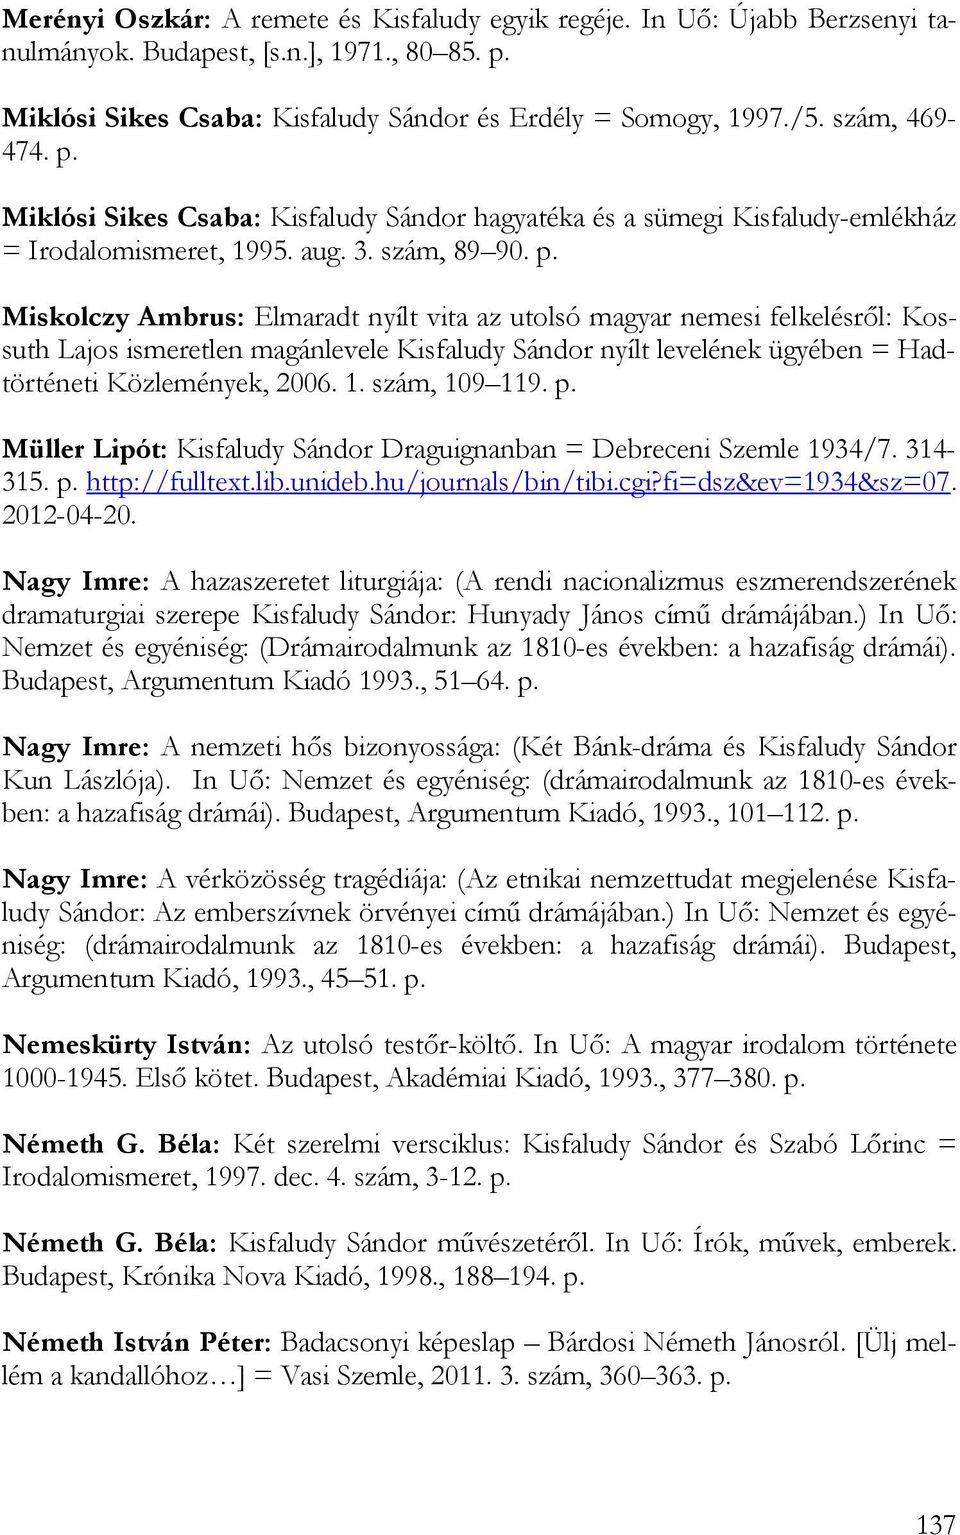 Miklósi Sikes Csaba: Kisfaludy Sándor hagyatéka és a sümegi Kisfaludy-emlékház = Irodalomismeret, 1995. aug. 3. szám, 89 90. p.